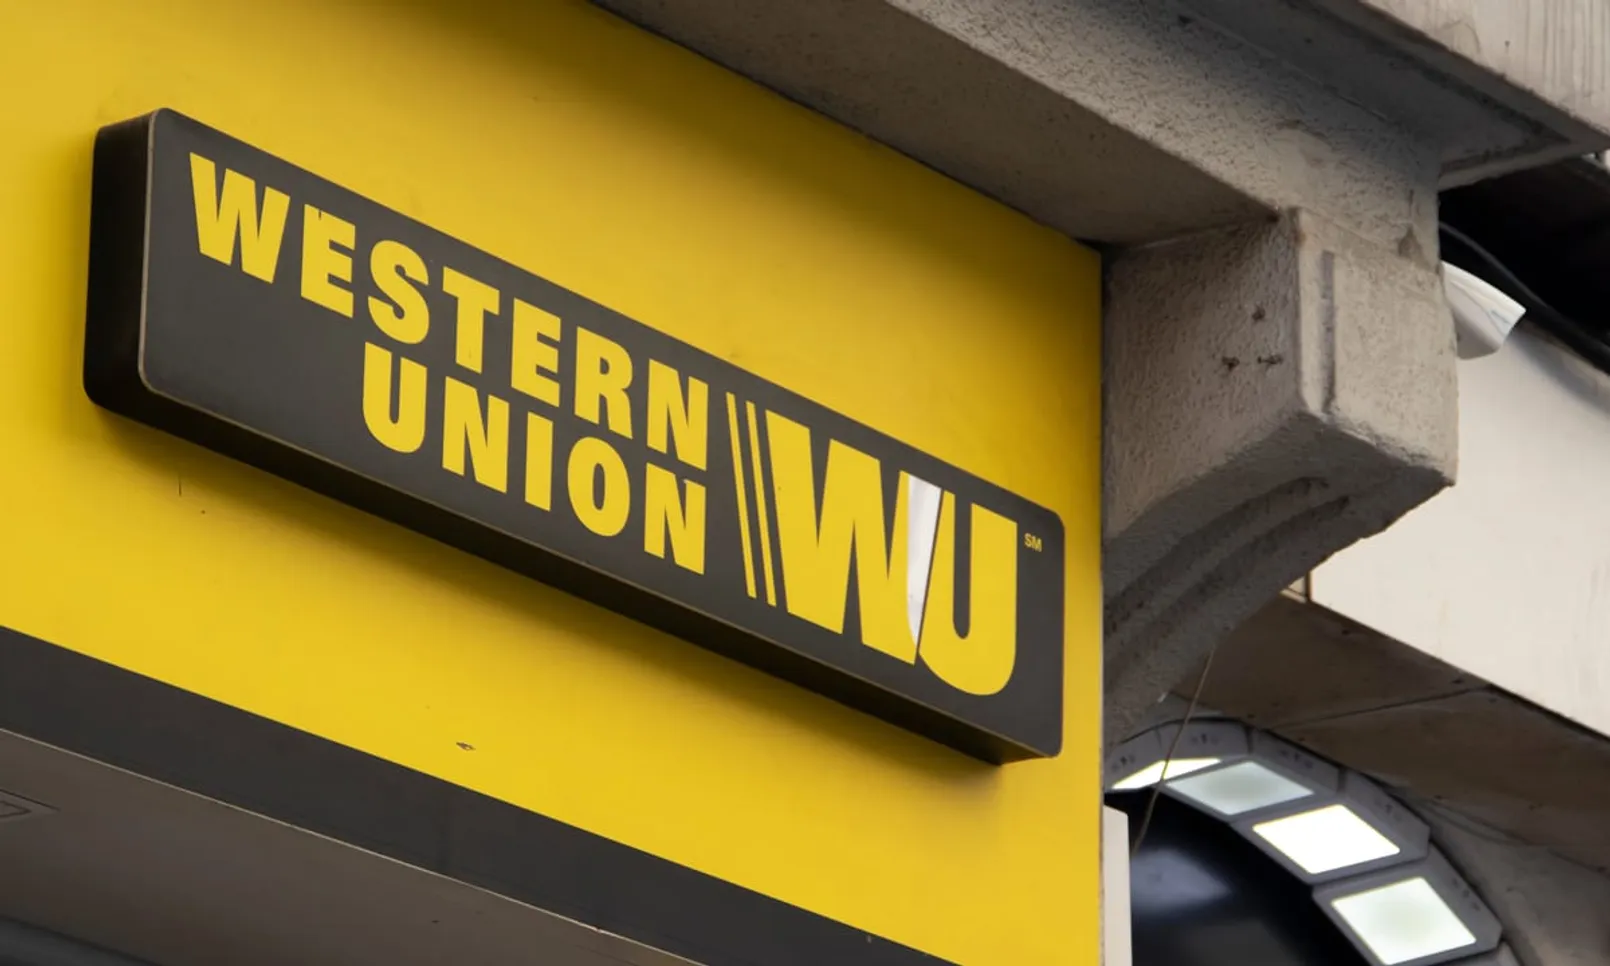 Western Union.jpg